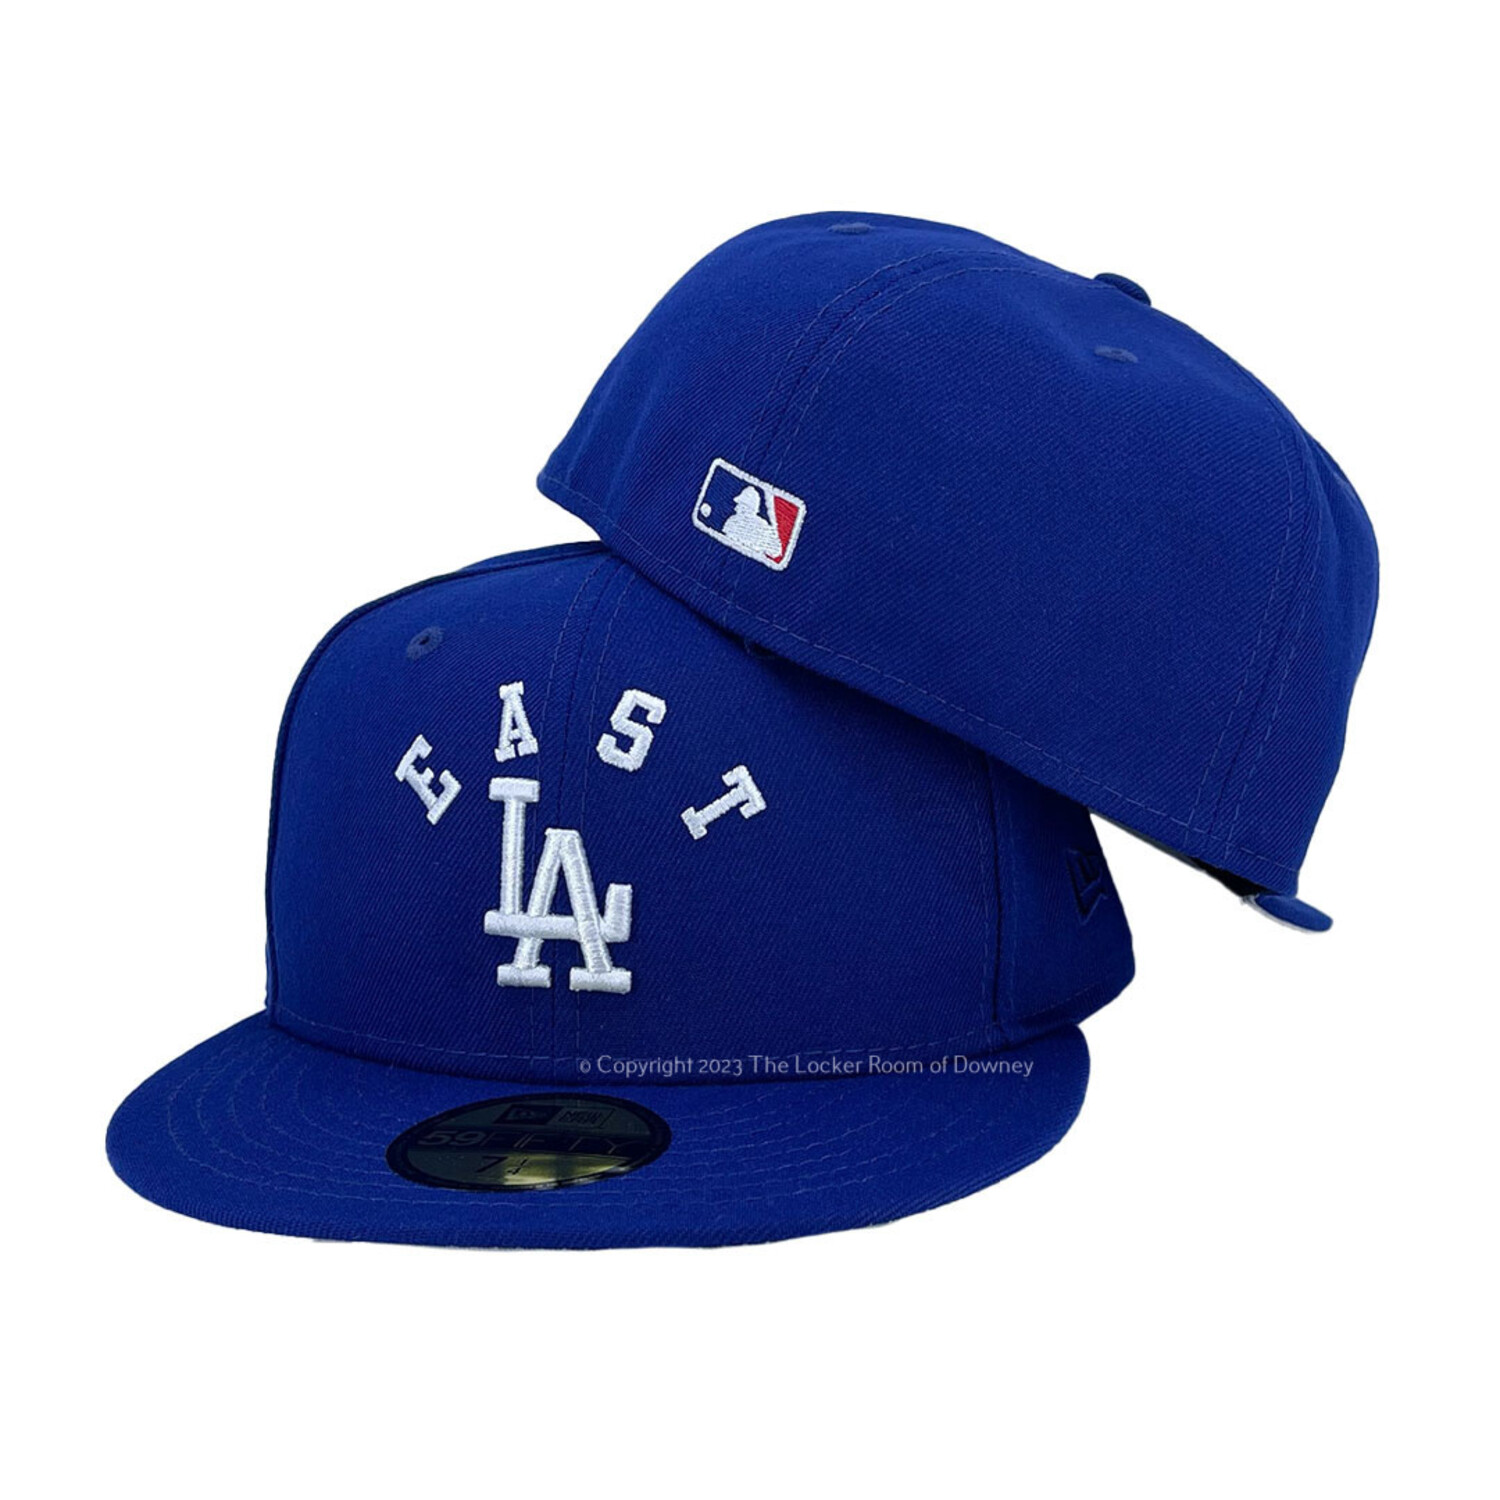 LA Dodgers East LA Arch Blue - The Locker Room of Downey